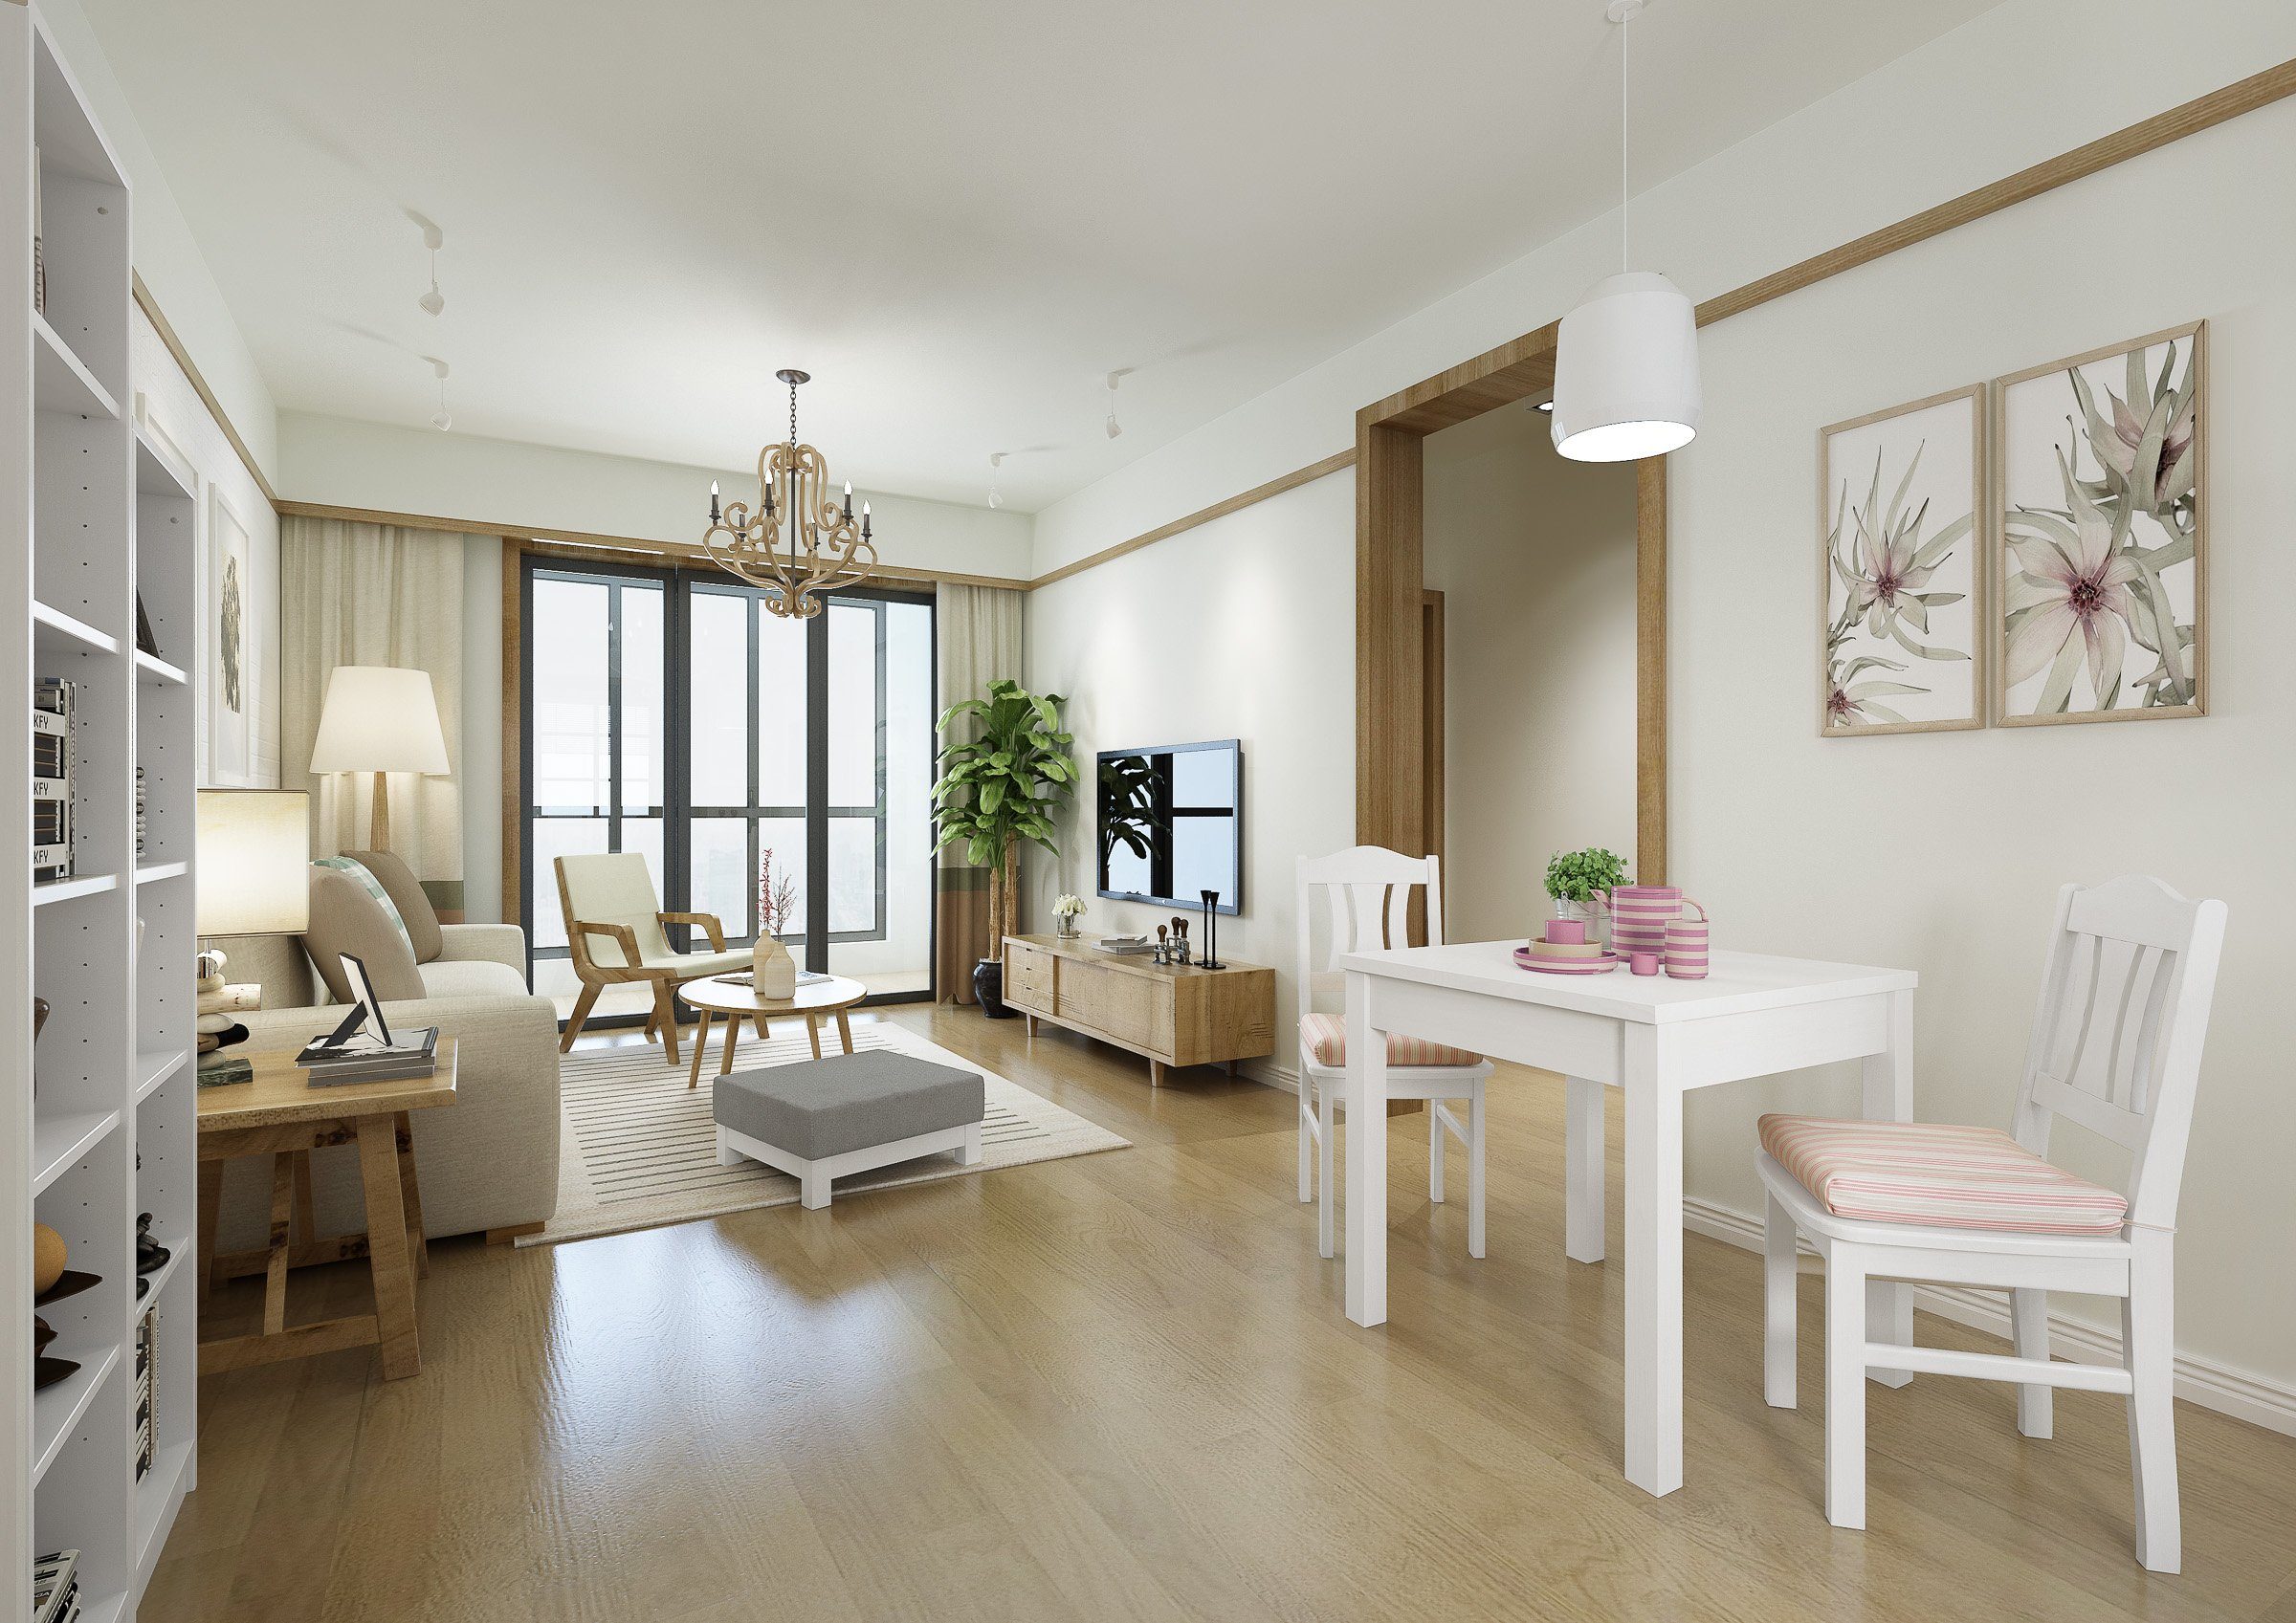 ERST-HOLZ Esszimmerstuhl oder Doppelpack Massivholzstuhl Küchenstuhl weiß Einzel-